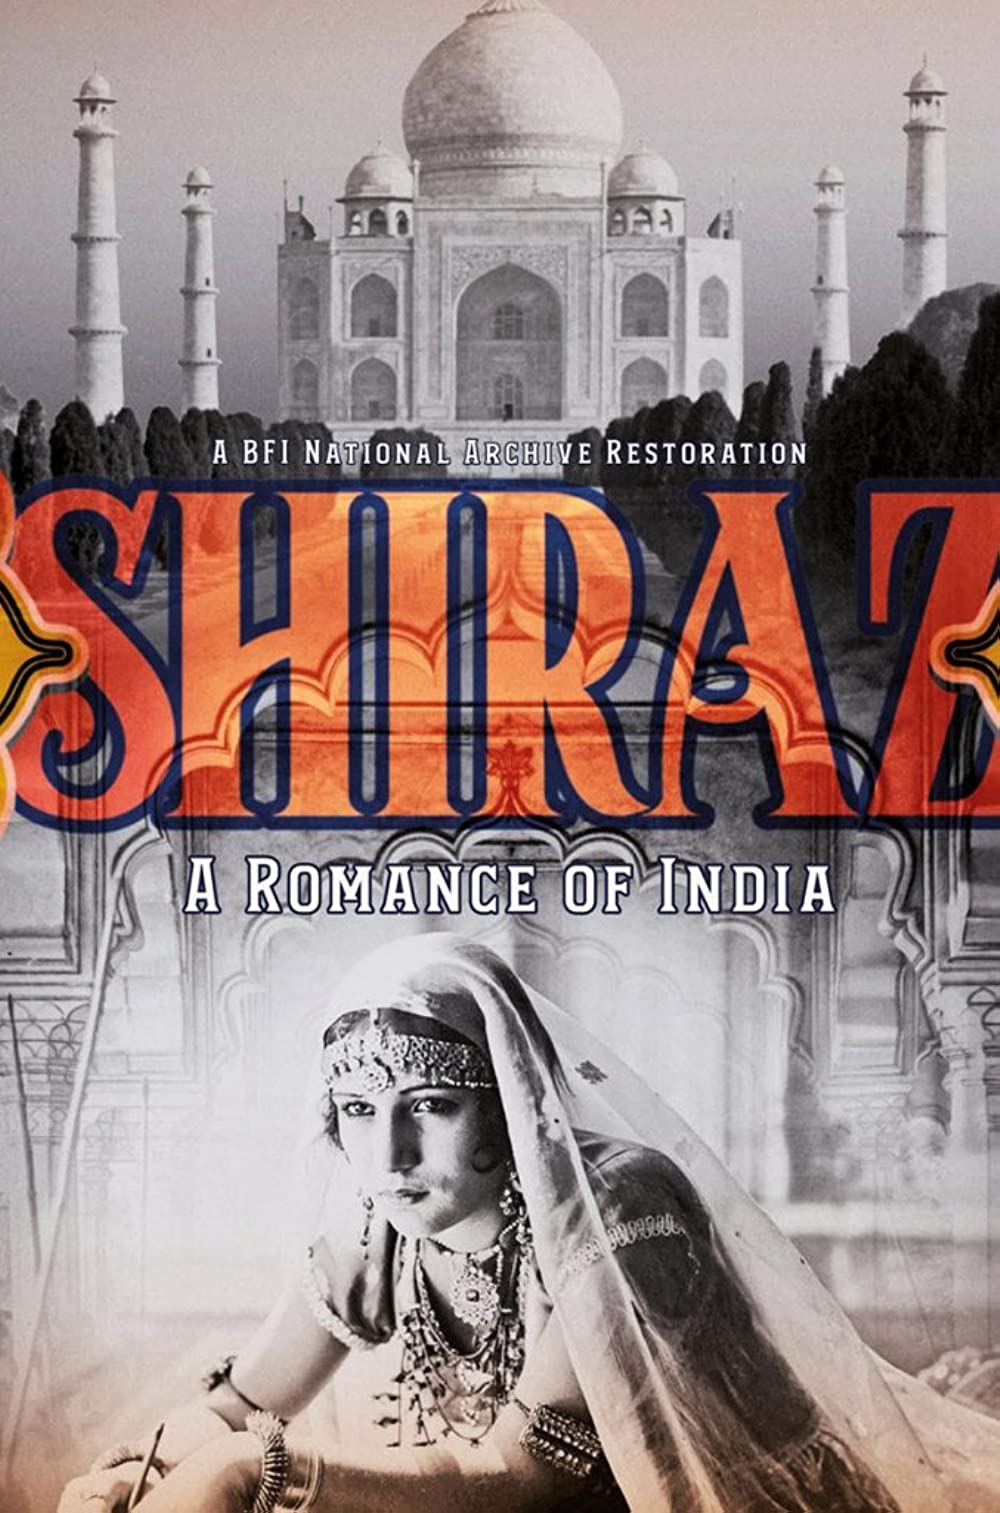 Filmbeschreibung zu Shiraz - Das Grabmal einer großen Liebe